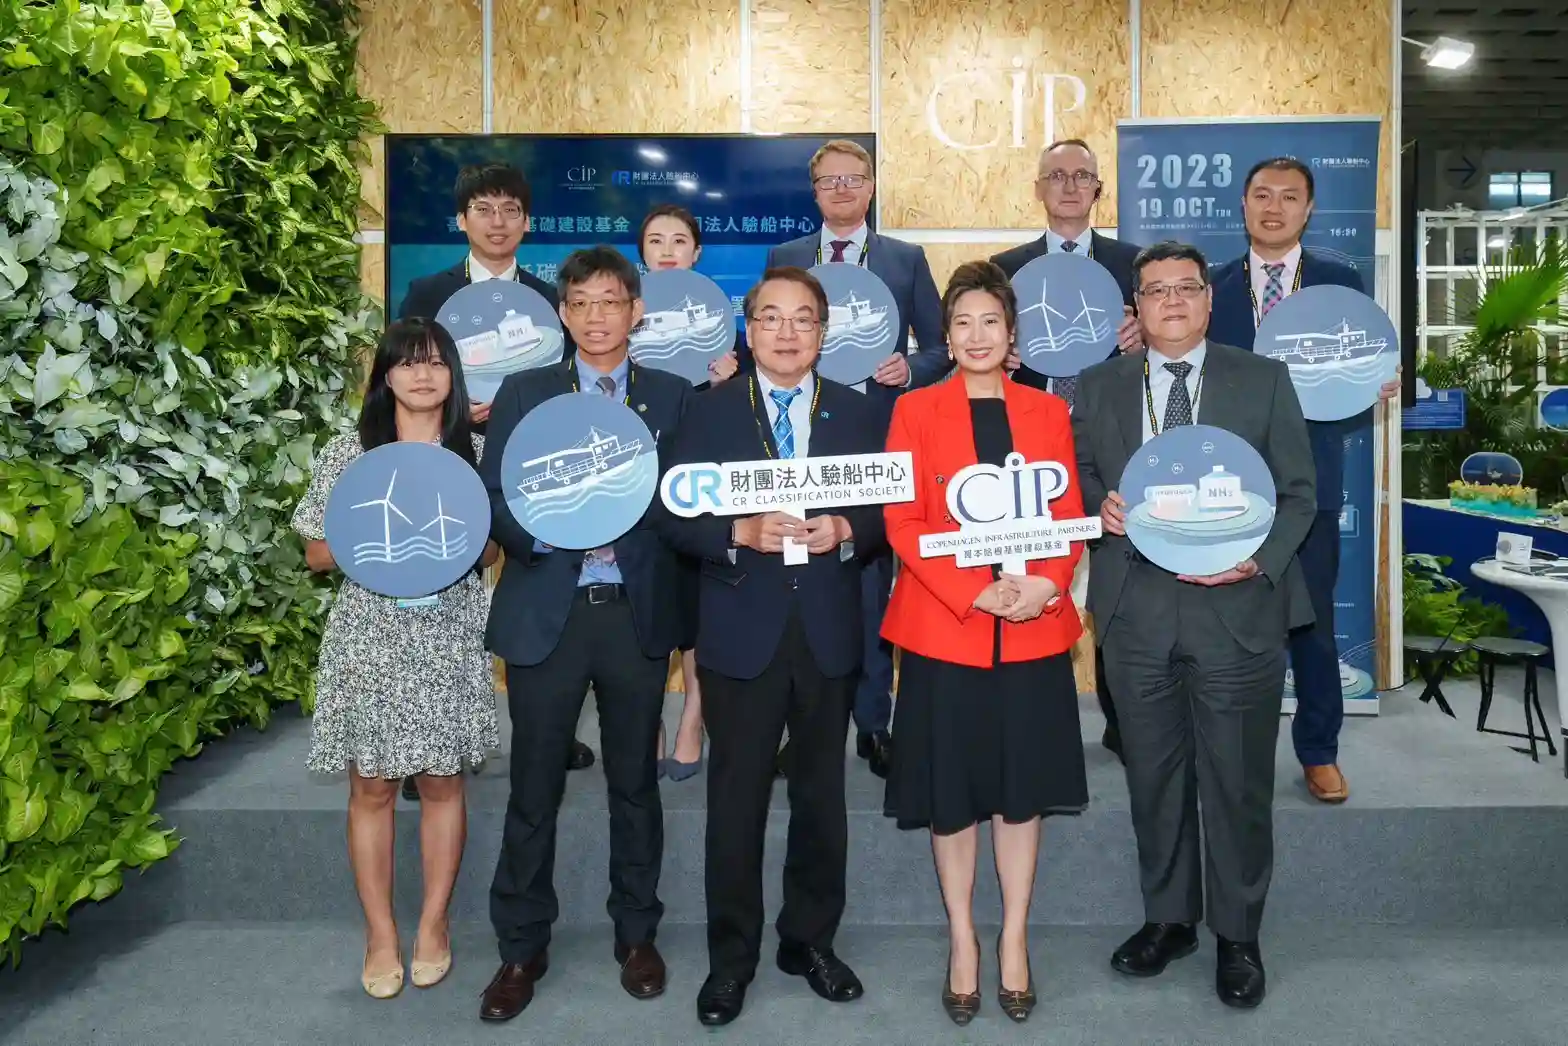 驗船中心 (CR) 與 CIP 簽署合作備忘錄　研發低碳能源為臺灣航運業提供淨零減碳解方